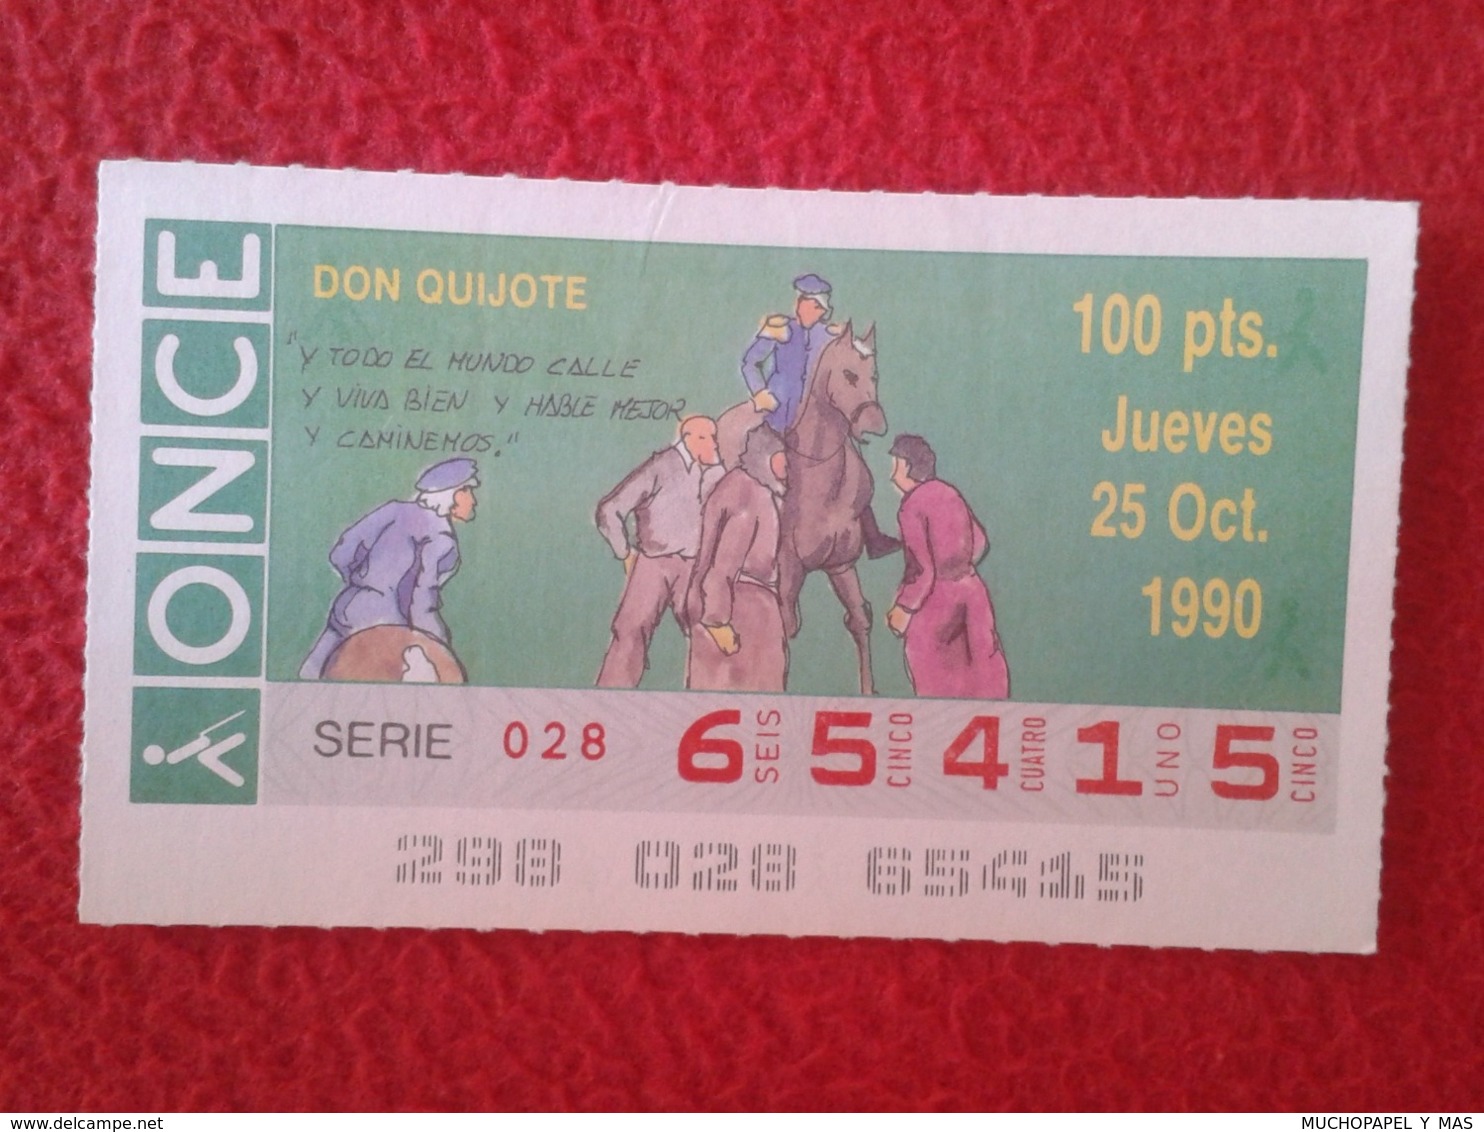 SPAIN CUPÓN DE ONCE CIEGOS LOTTERY LOTERÍA ESPAÑA 1990 DON QUIJOTE LA MANCHA MIGUEL CERVANTES DICHOS ESCENAS REFRANES... - Lotterielose